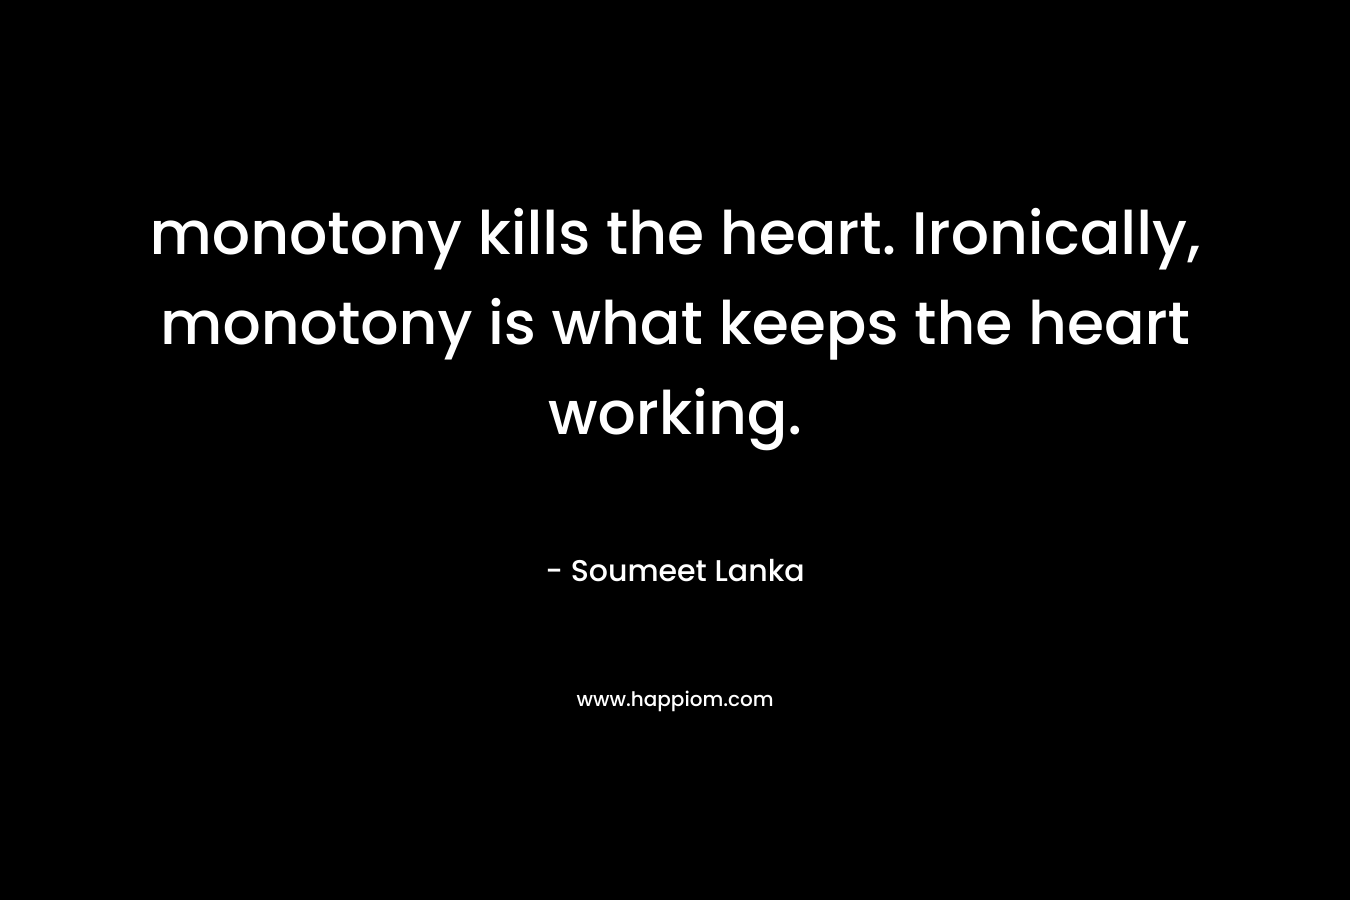 monotony kills the heart. Ironically, monotony is what keeps the heart working. – Soumeet Lanka